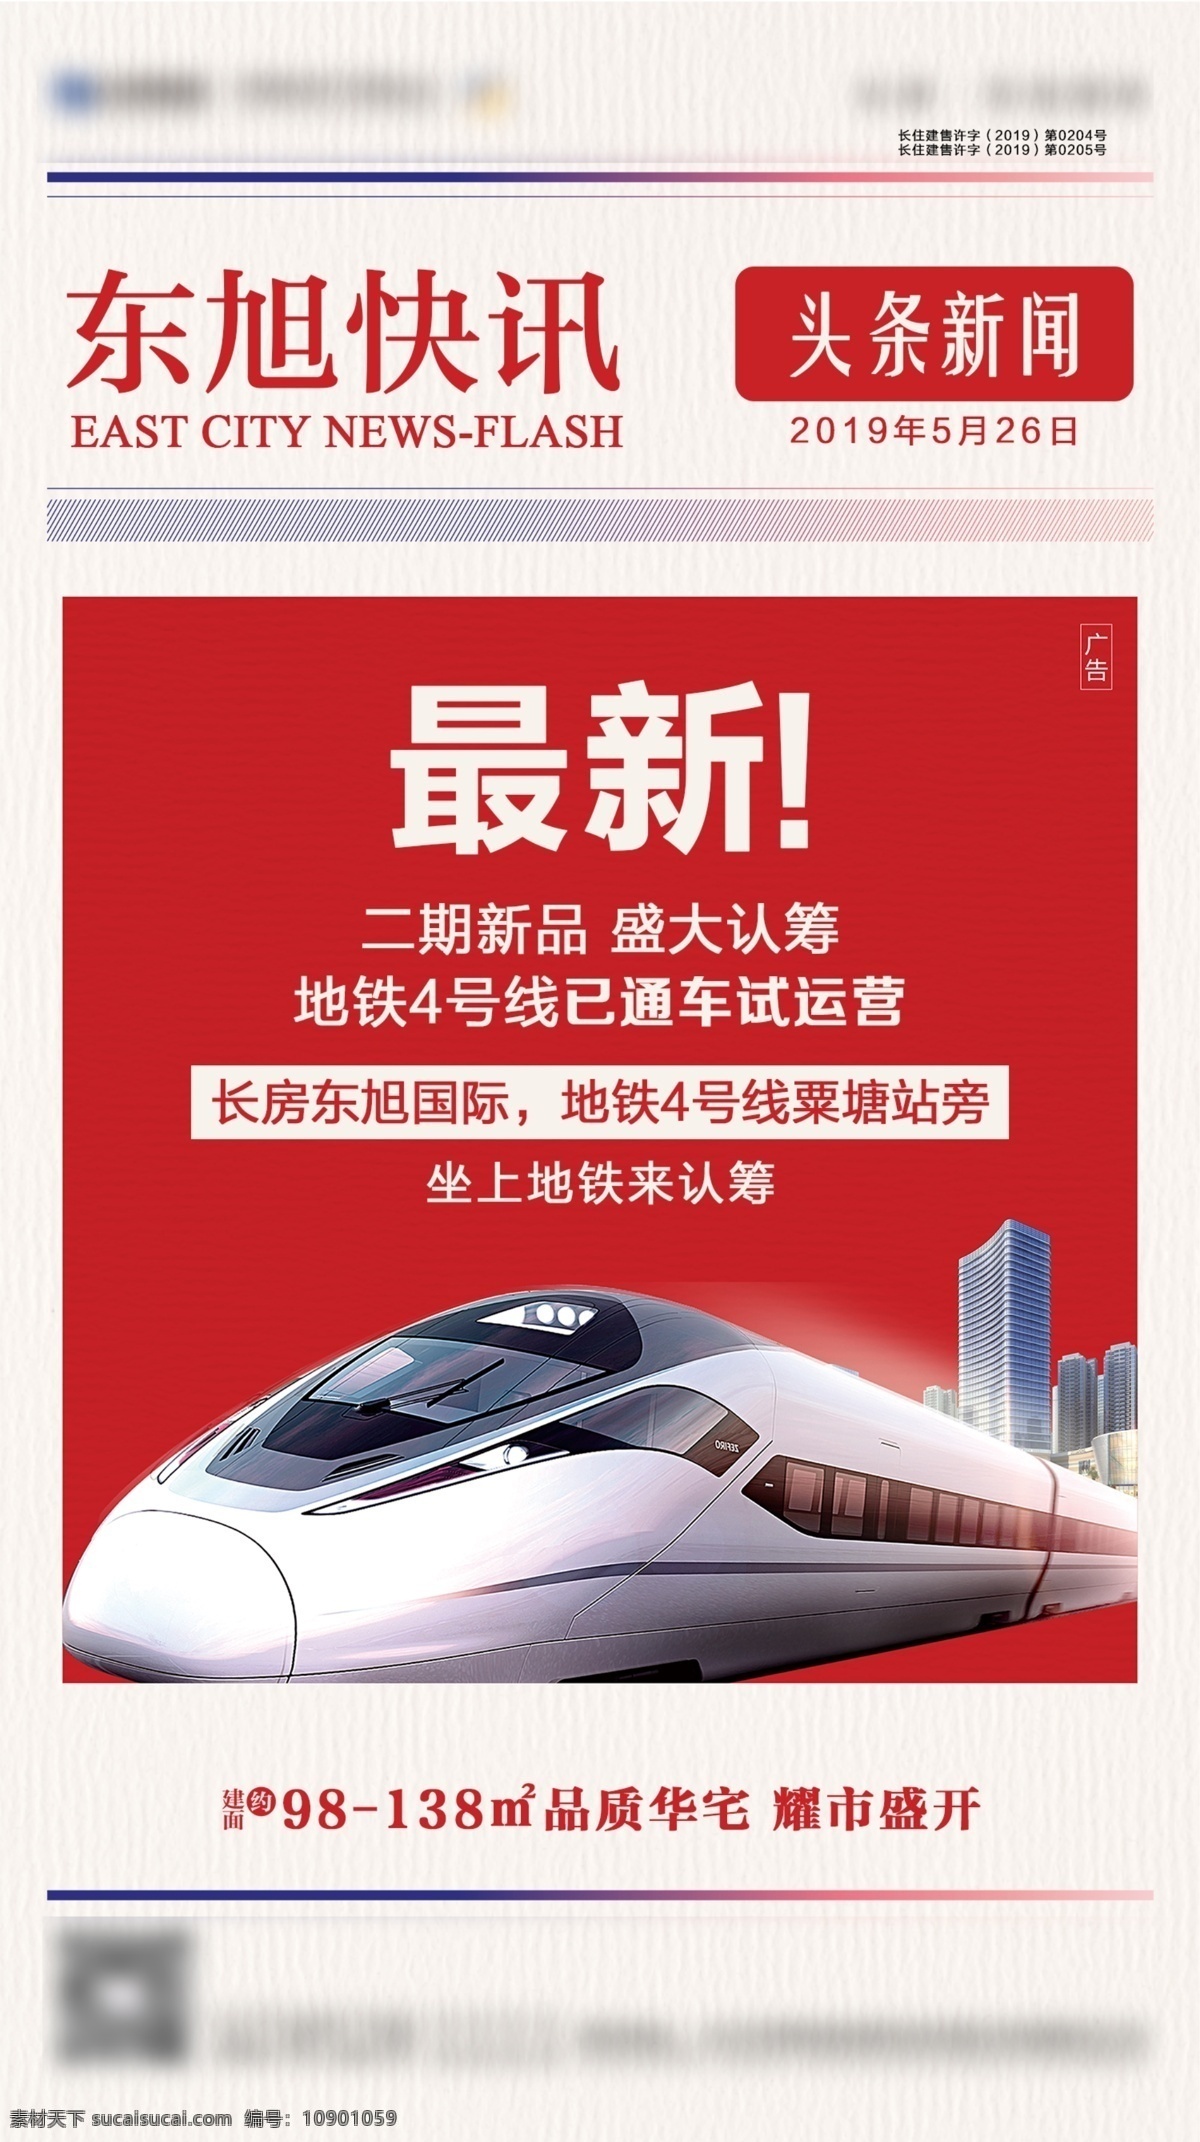 头条新闻 地产 地铁 快讯 报纸 地产广告 微信